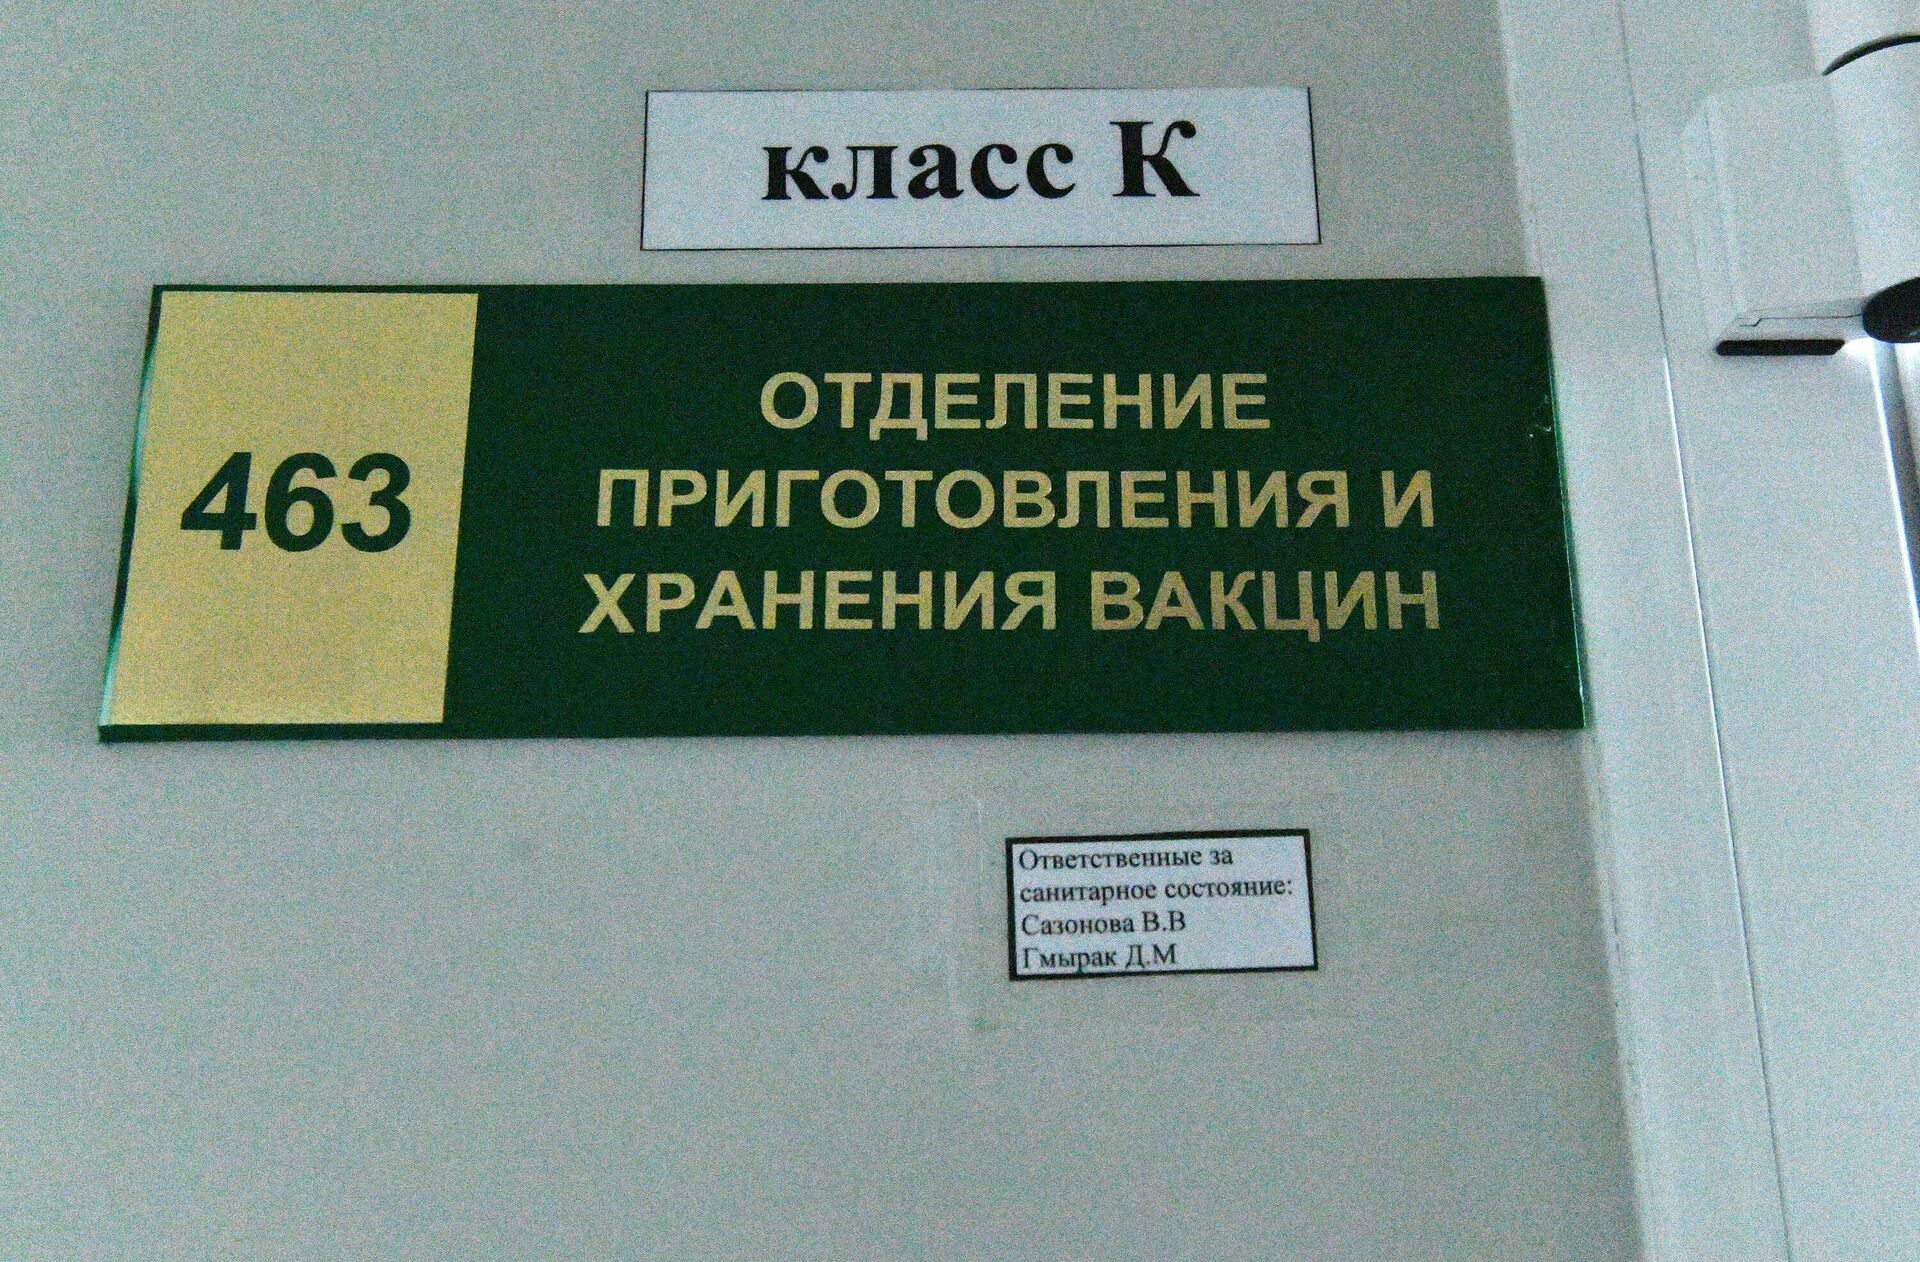 Отделение приготовления и хранения вакцин - Sputnik Беларусь, 1920, 27.12.2021